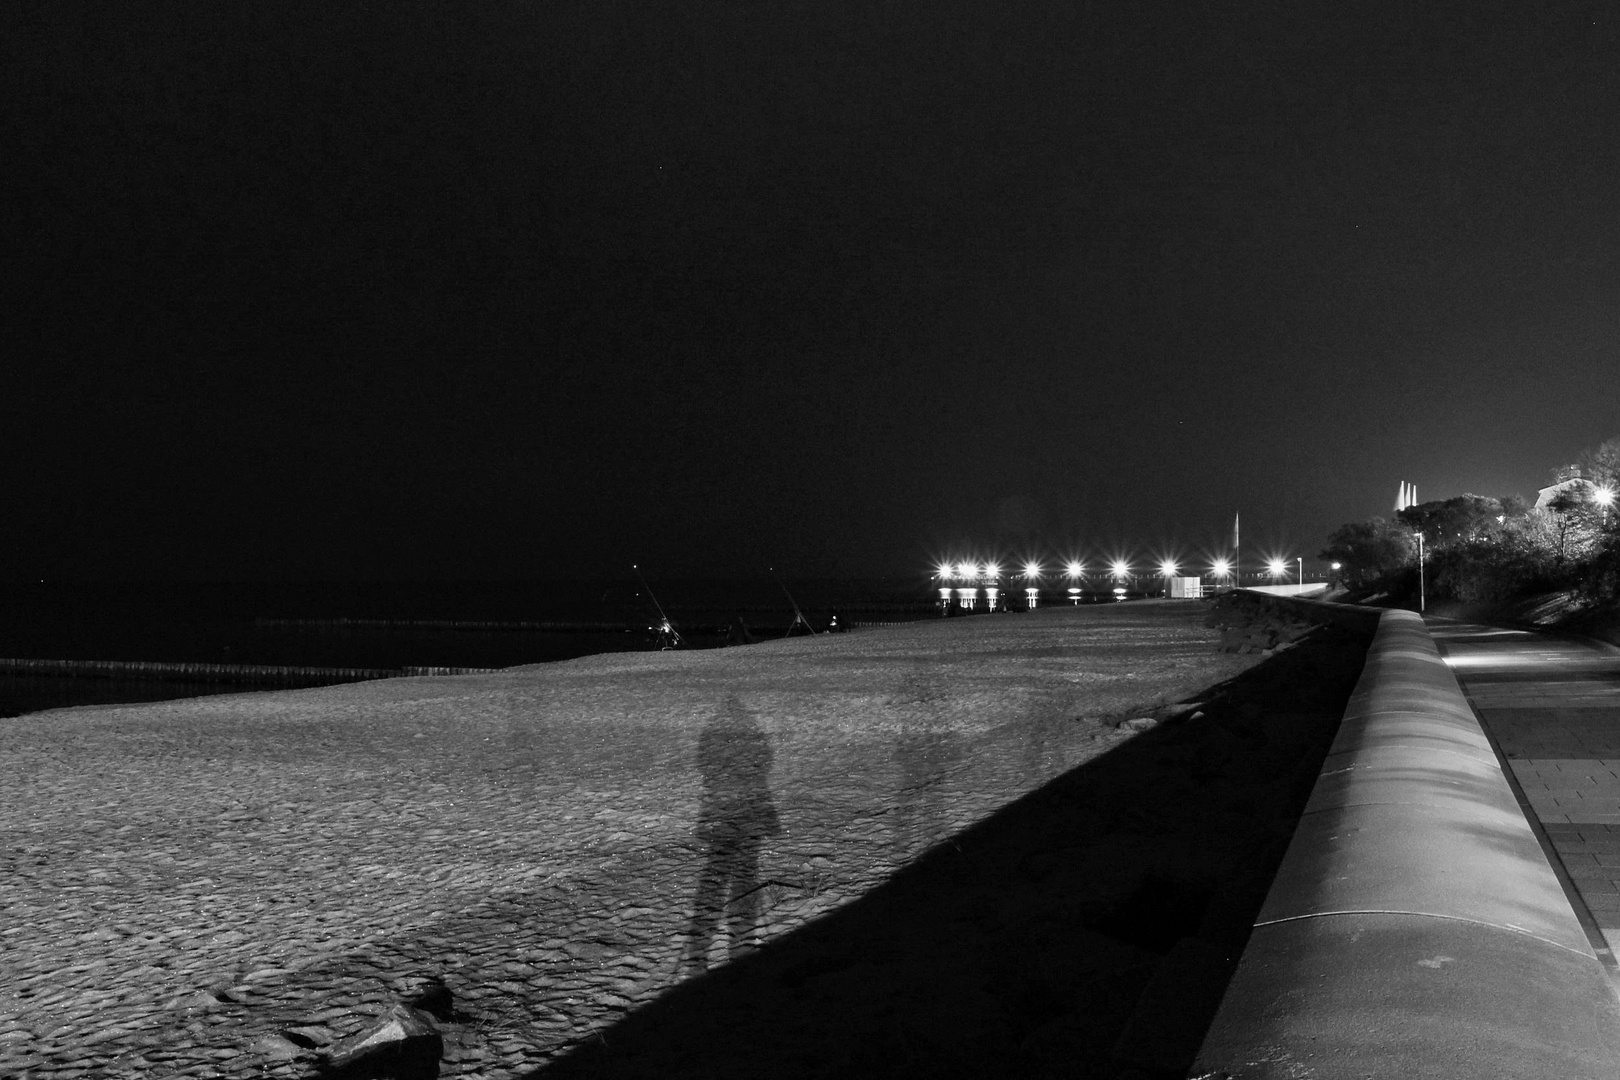 Nacht - Impression am Strand in SW